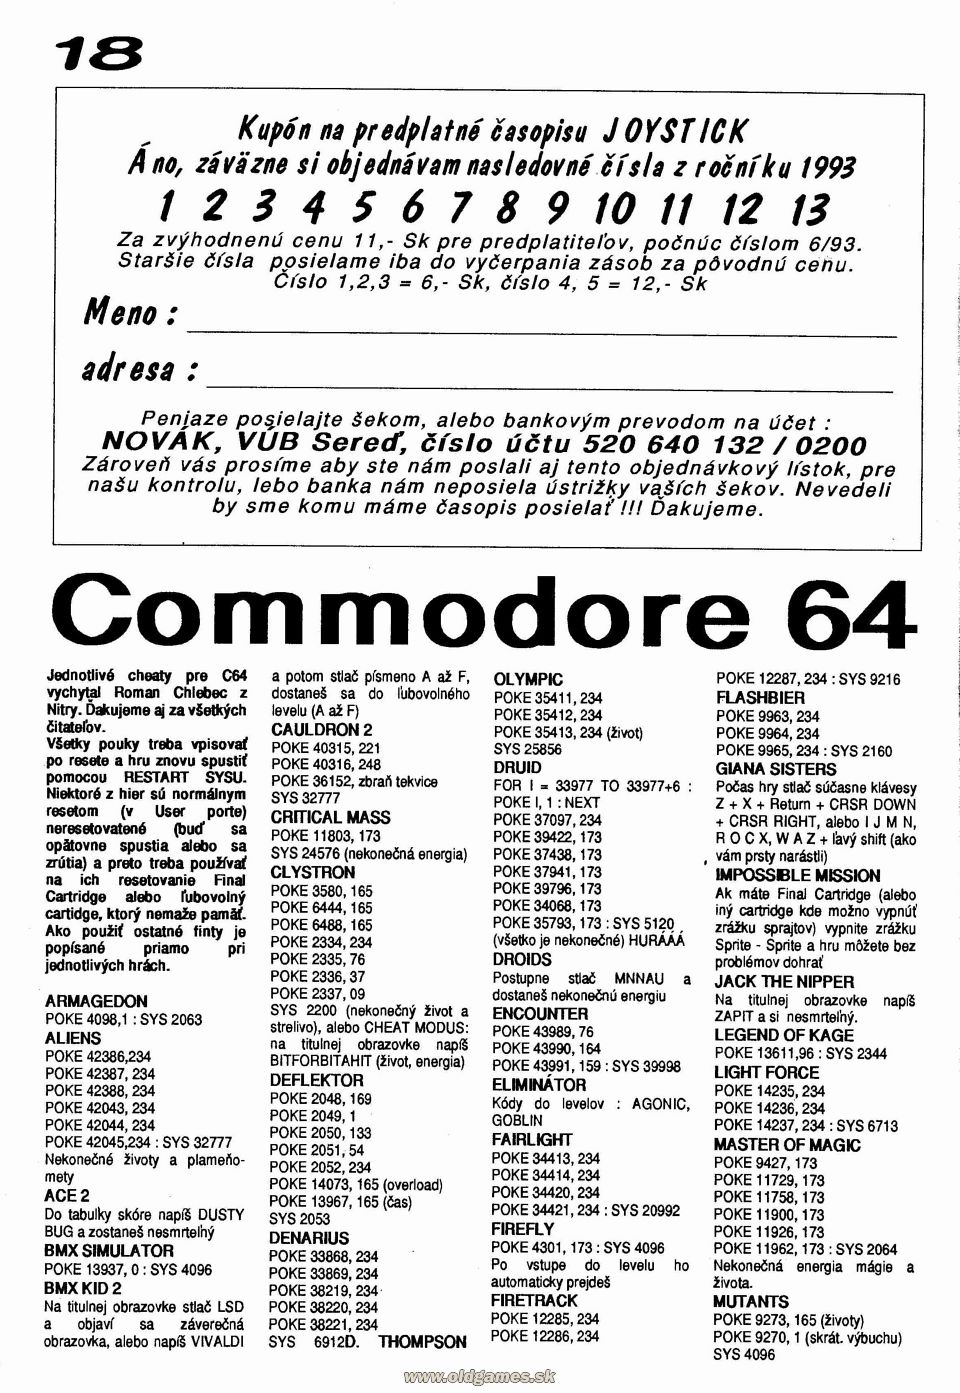 Cheaty - Commodore 64